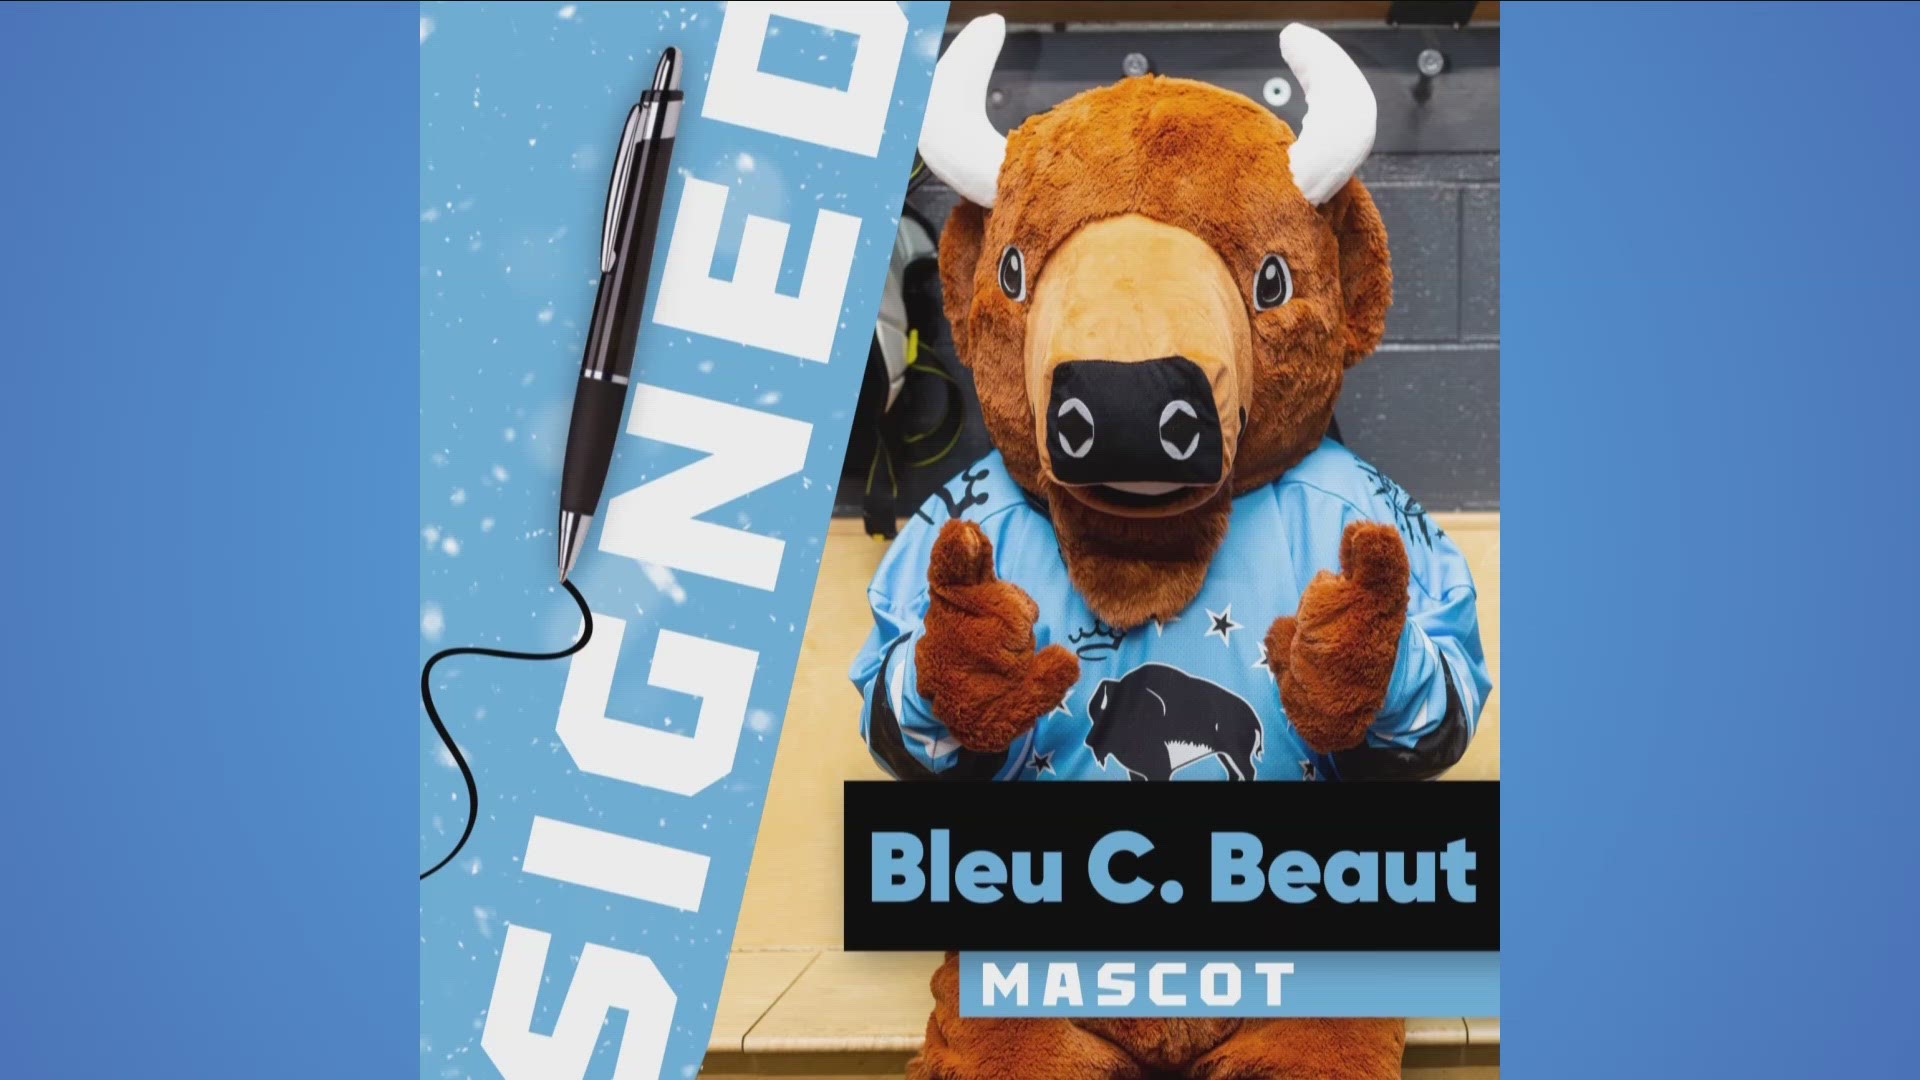 Bleu C. Beaut announced as new Beauts mascot